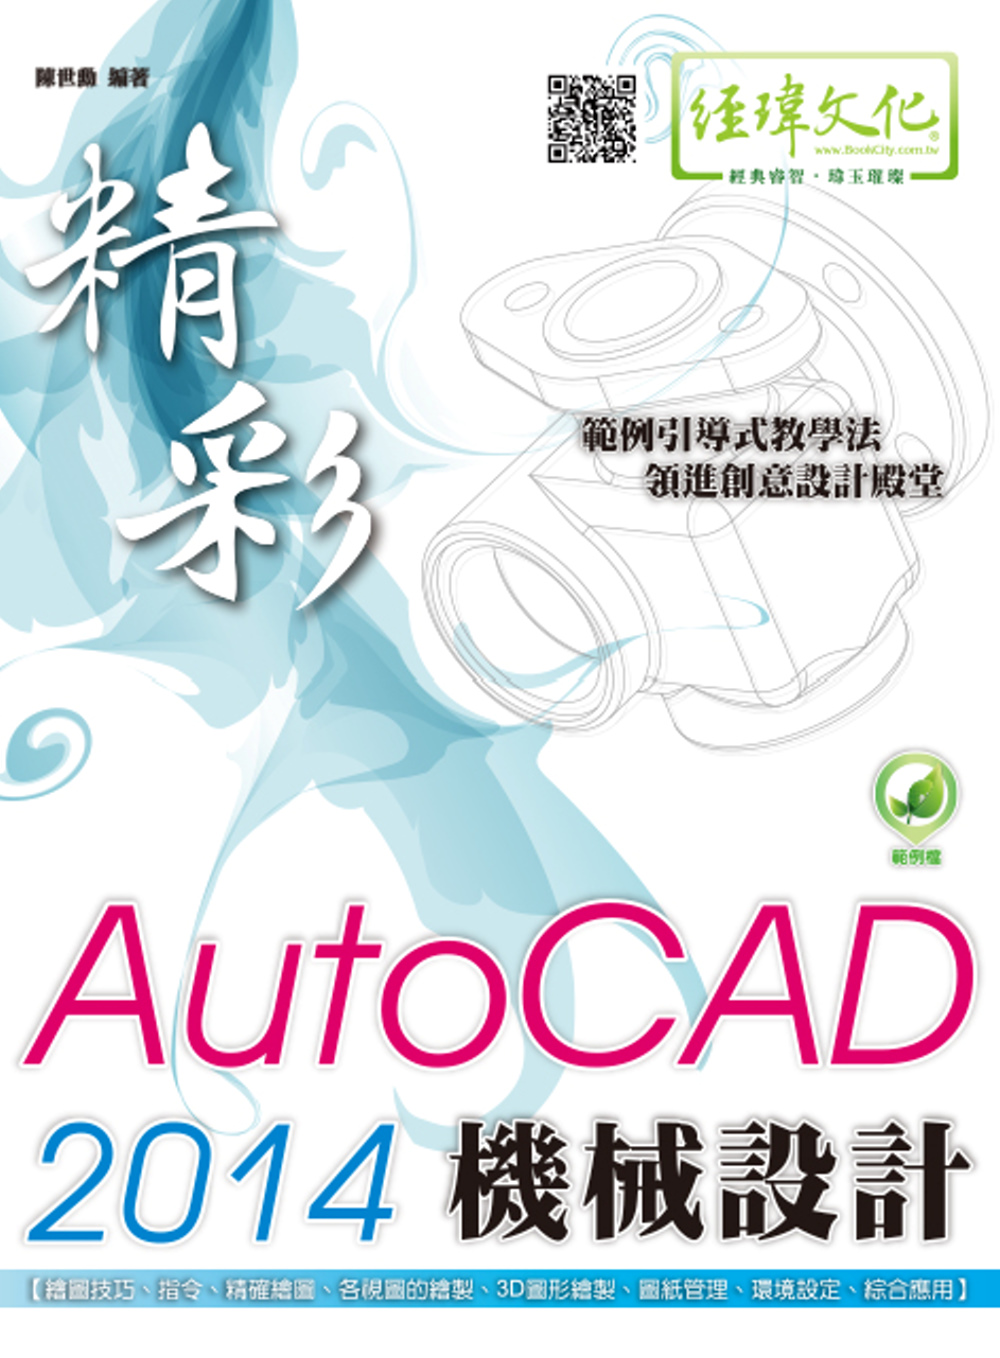 精彩 AutoCAD 2014 機械設計(附綠色範例檔)